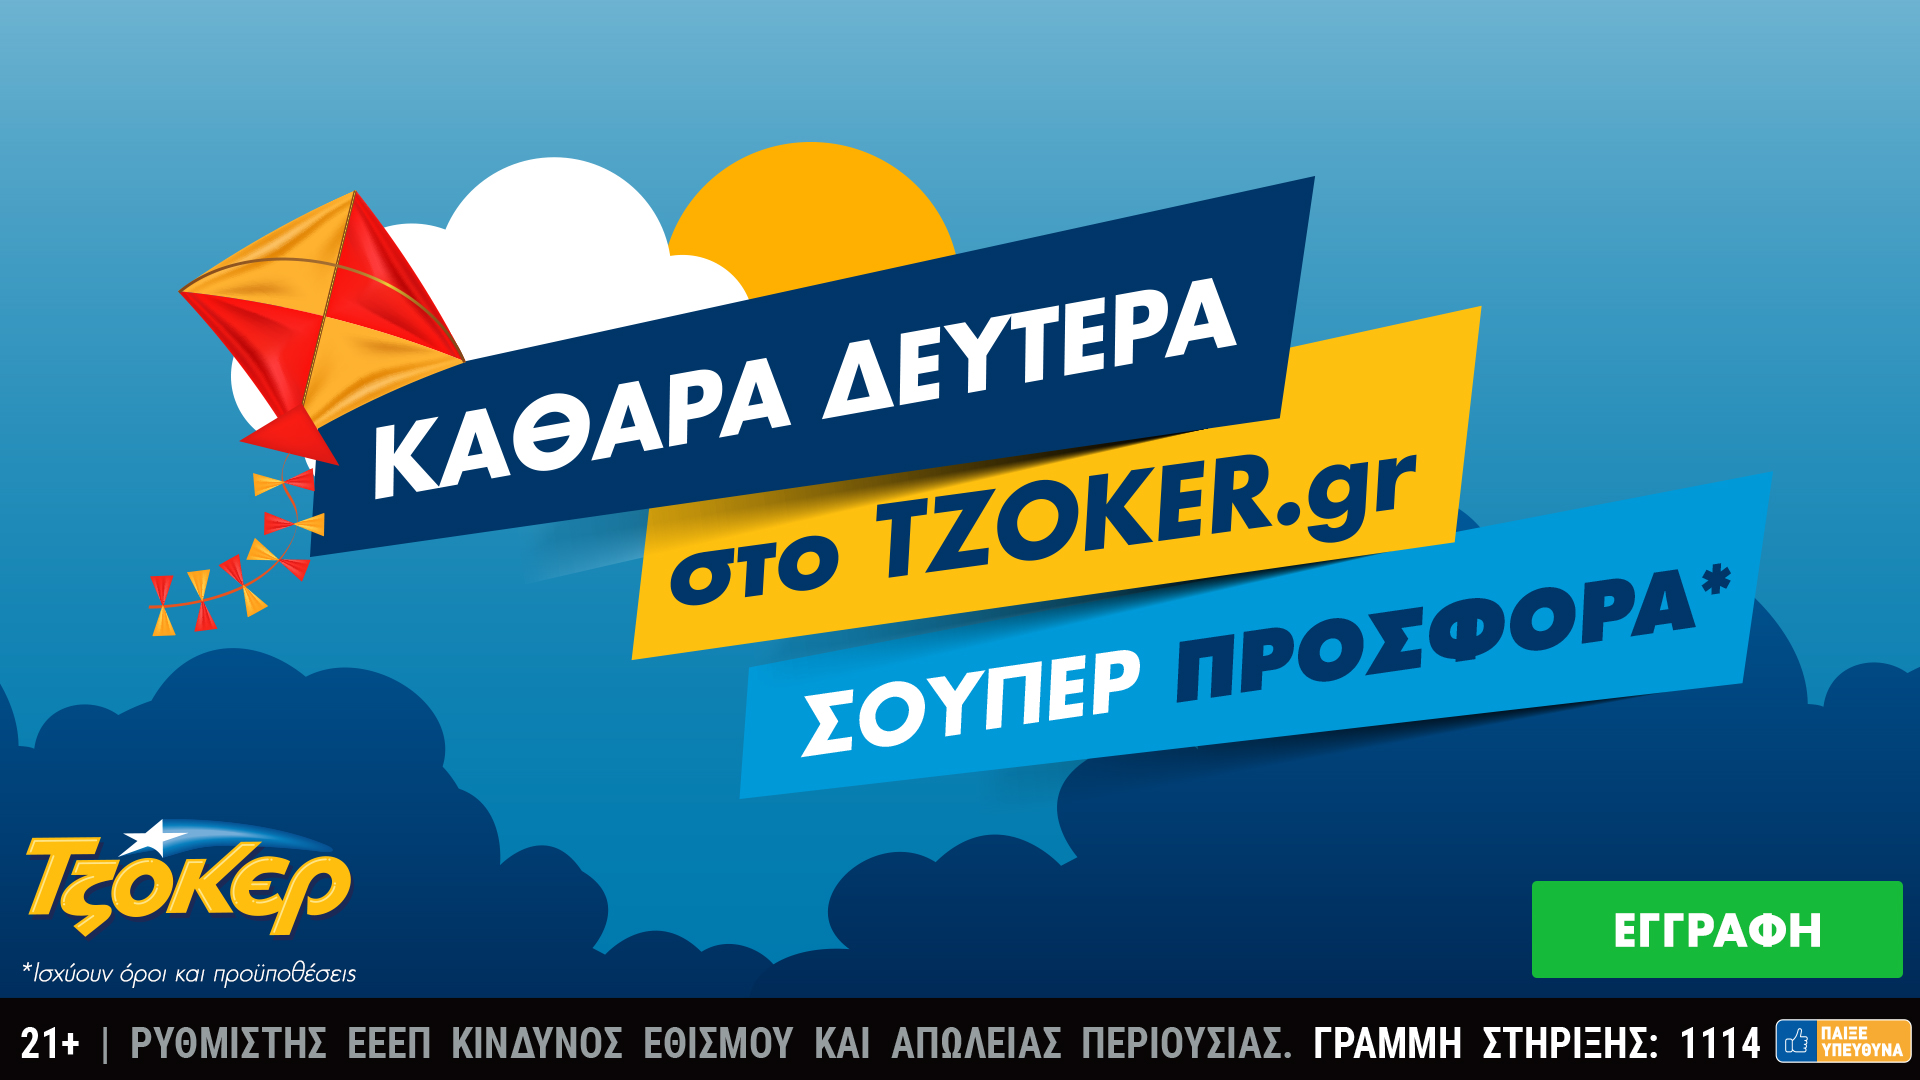 Καθαρά Δευτέρα στο tzoker.gr με μια σούπερ προσφορά!